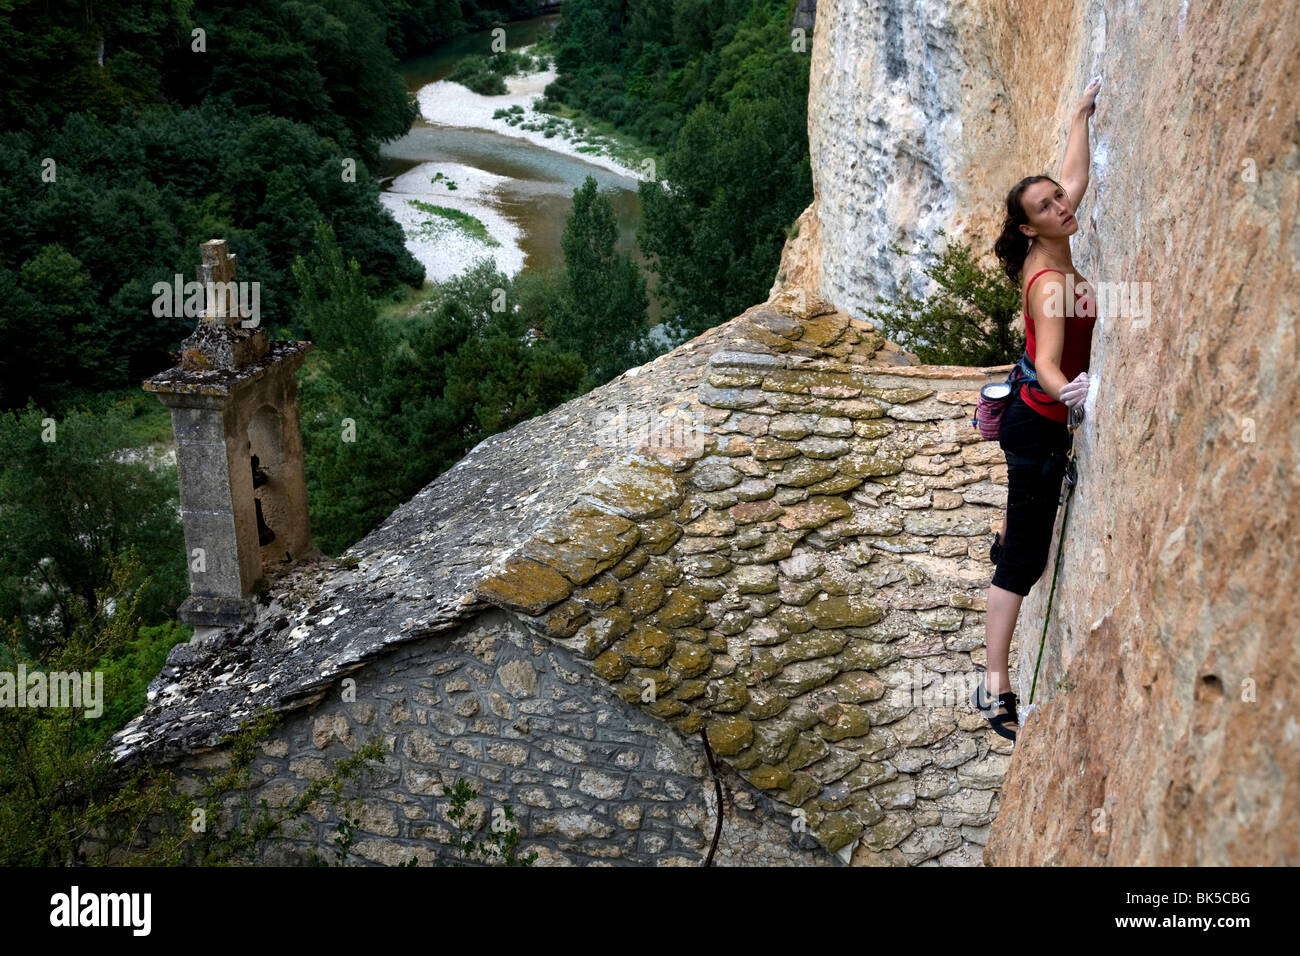 Un escalador en los acantilados conocidos como las paredes de Tennessee, Gorges du Tarn, cerca de Millau y Rodez, región de Cevennes, Francia Foto de stock